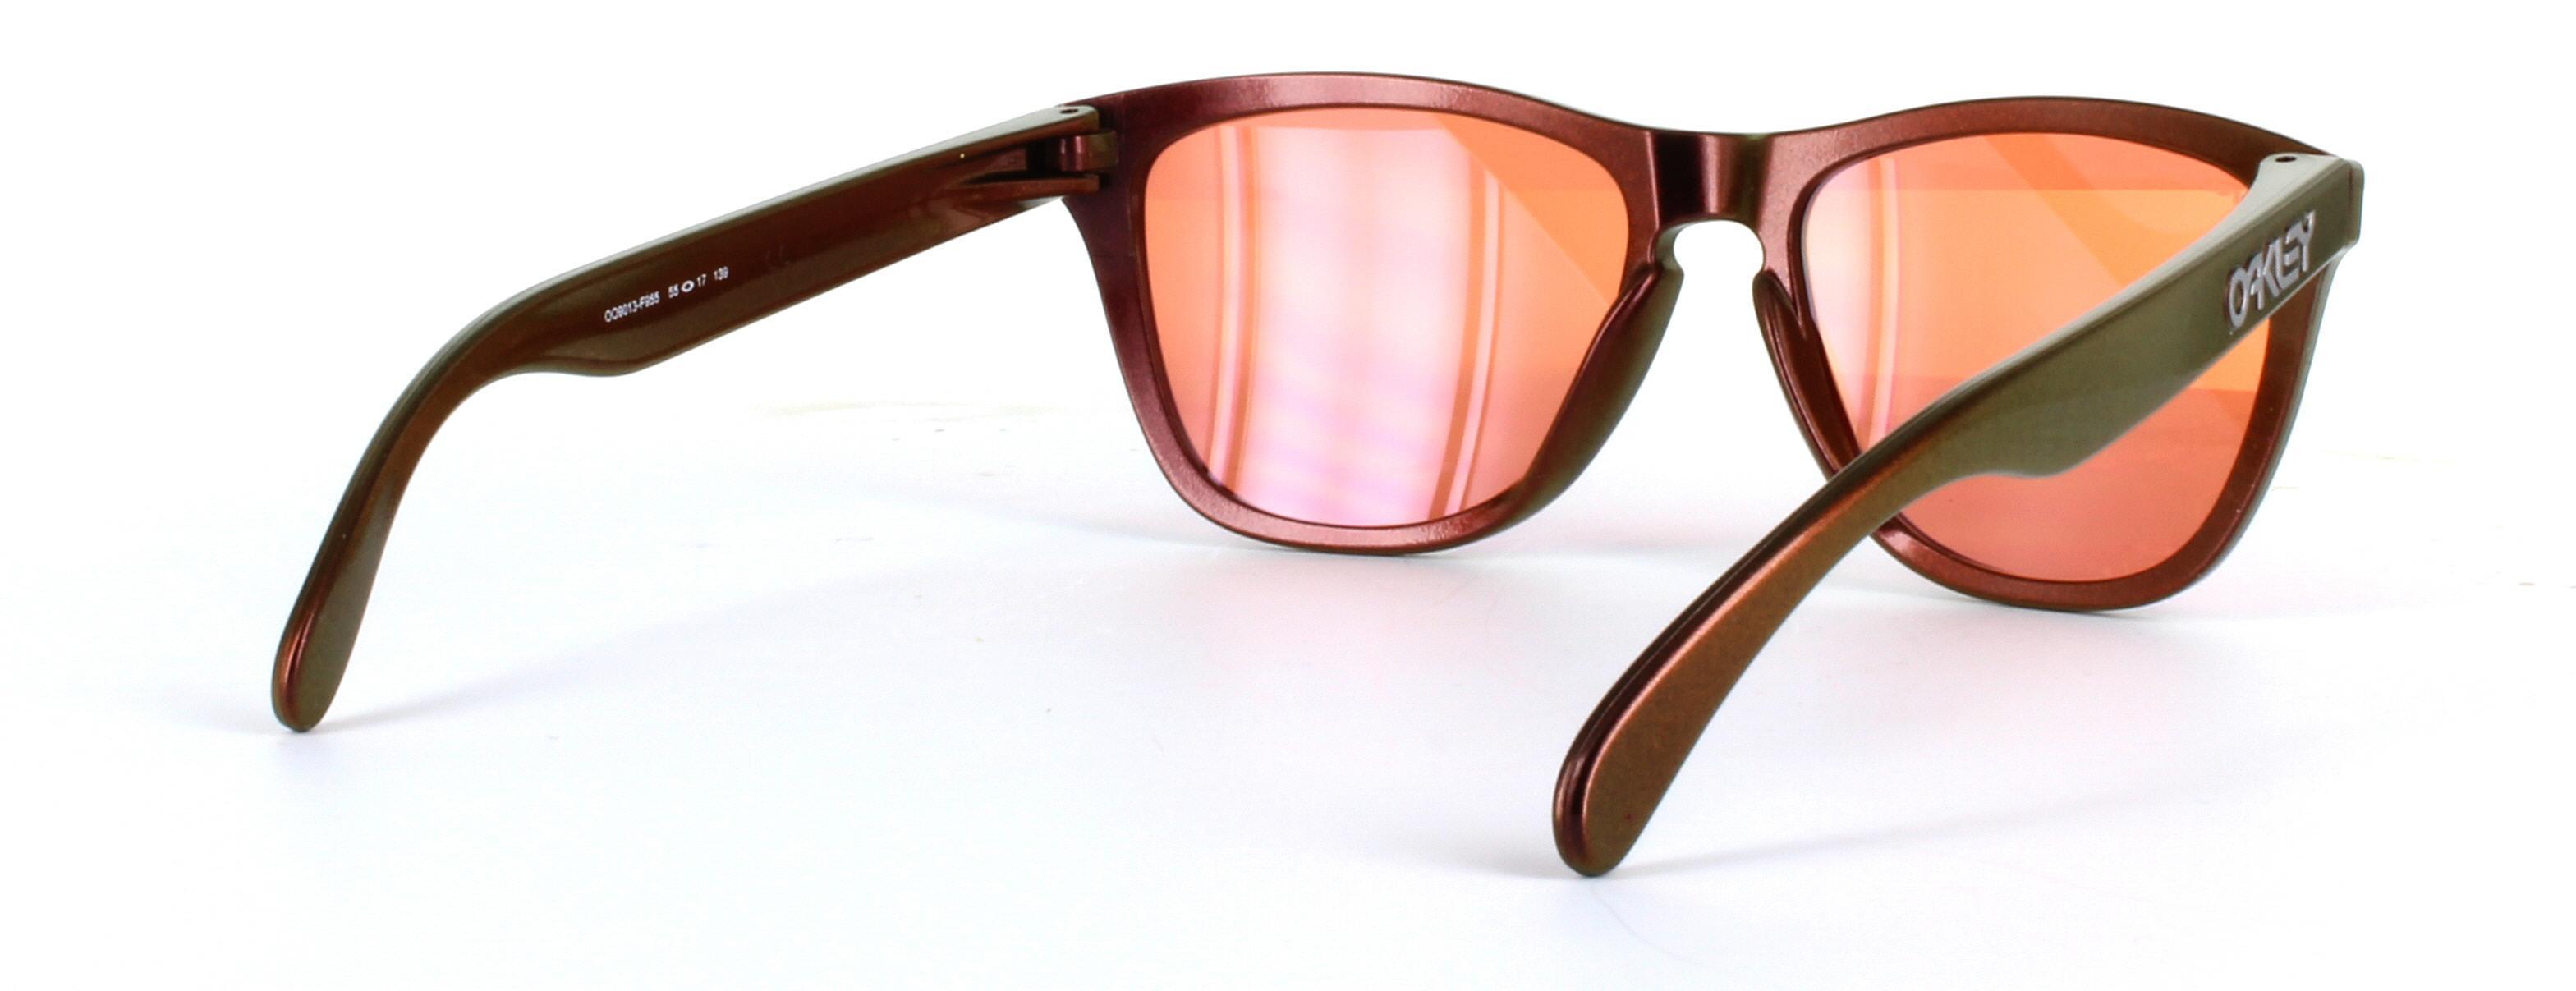 Oakley (O9013) Copper Full Rim Plastic Sunglasses - Image View 4